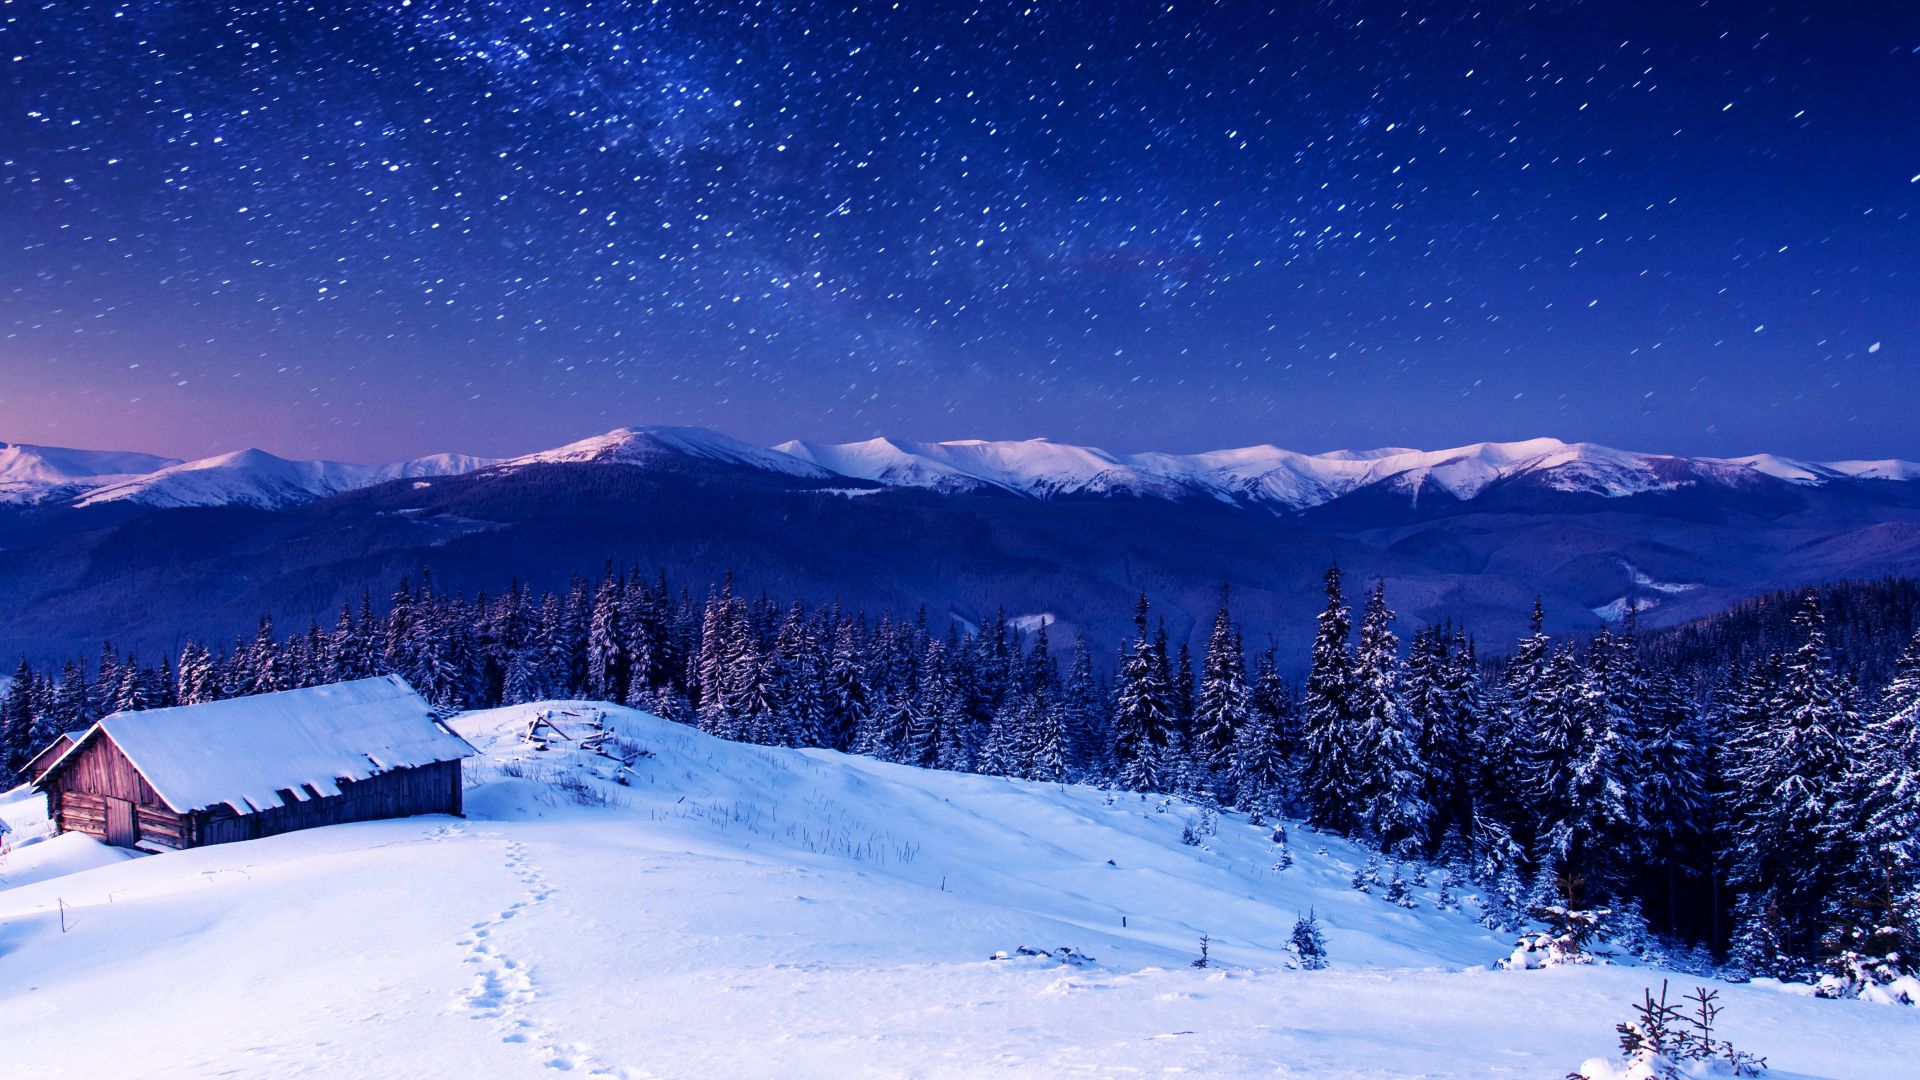 Горы, 5k, 4k, 8k, ночь, звезды, деревья, небо, снег, Mountains, 5k, 4k wallpaper, 8k, night, stars, trees, sky, snow (horizontal)